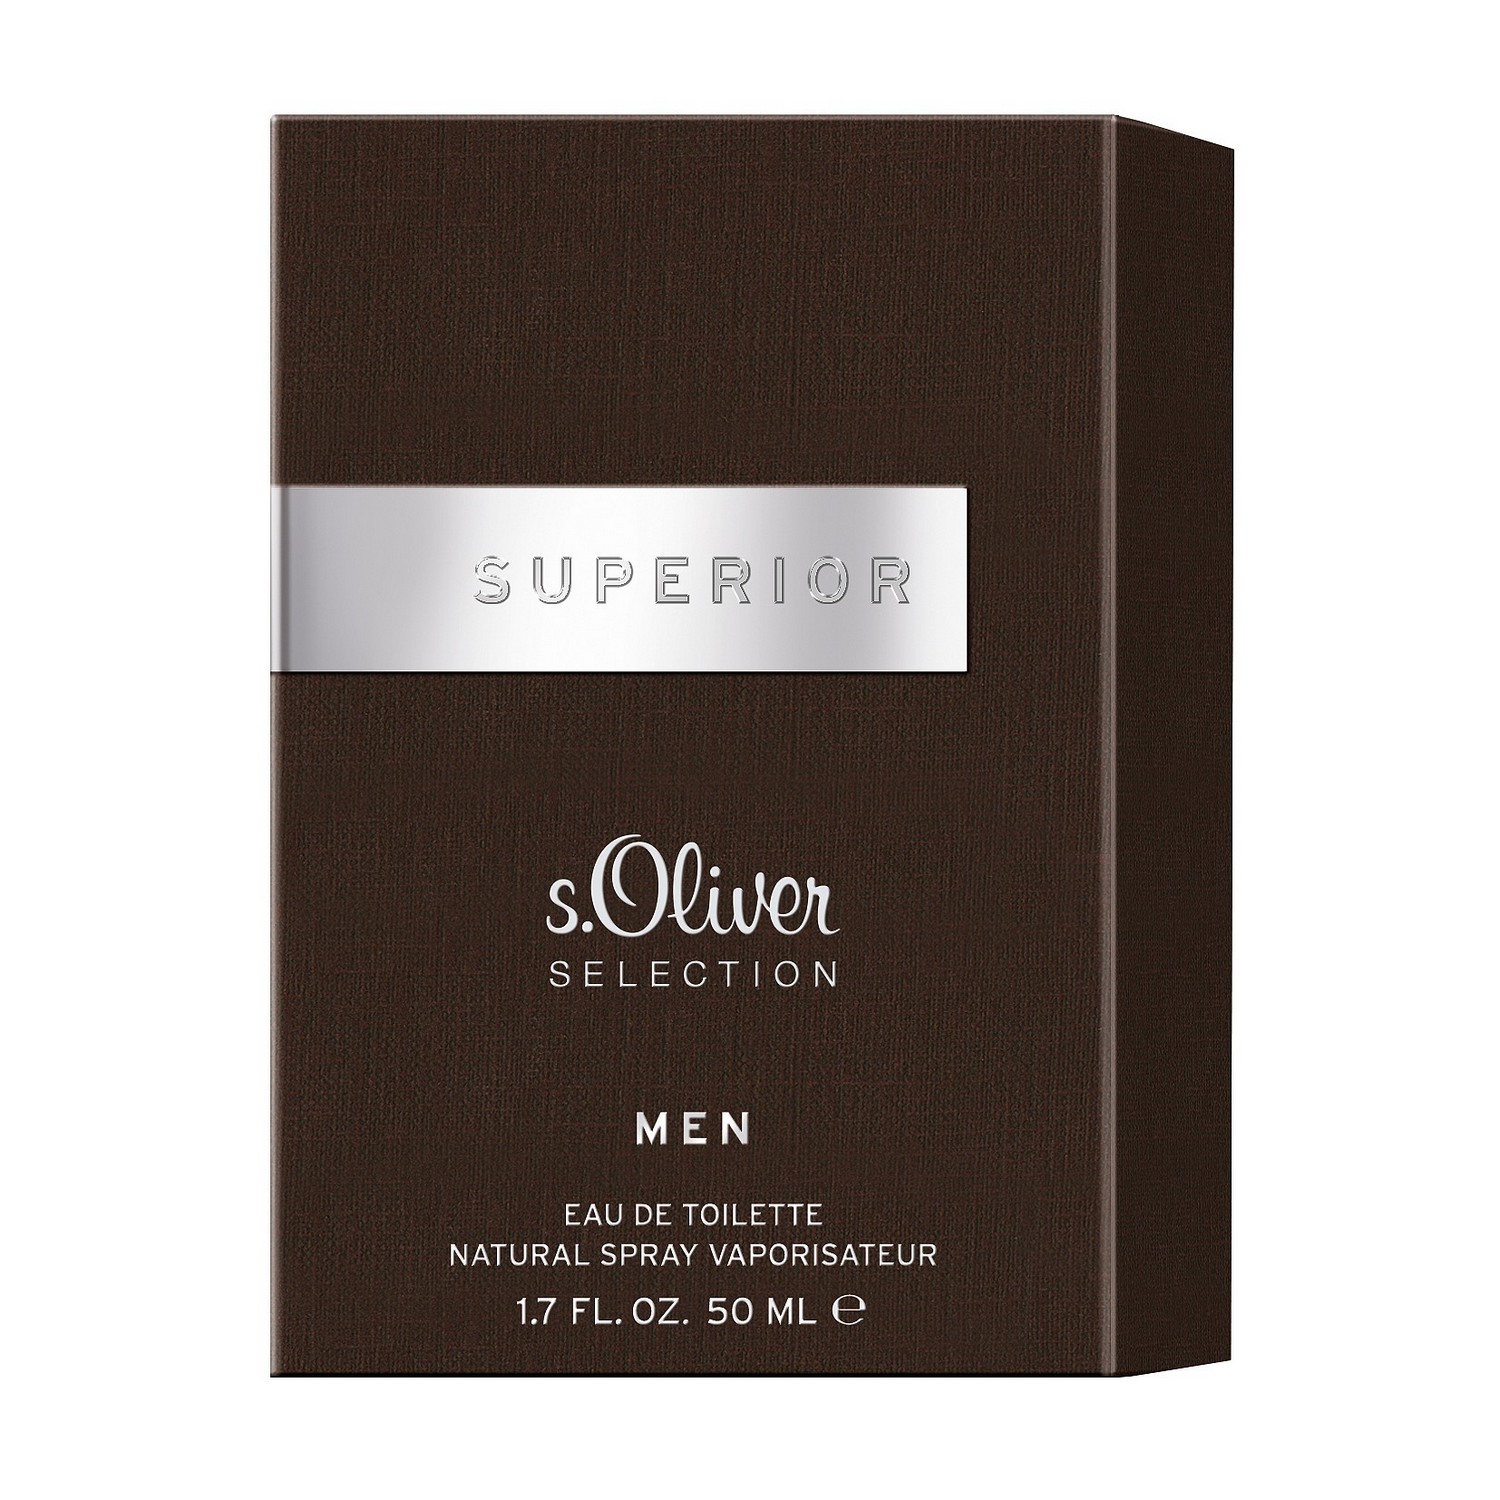 S.Oliver Selection Superior Men Eau de Toilette 50ml